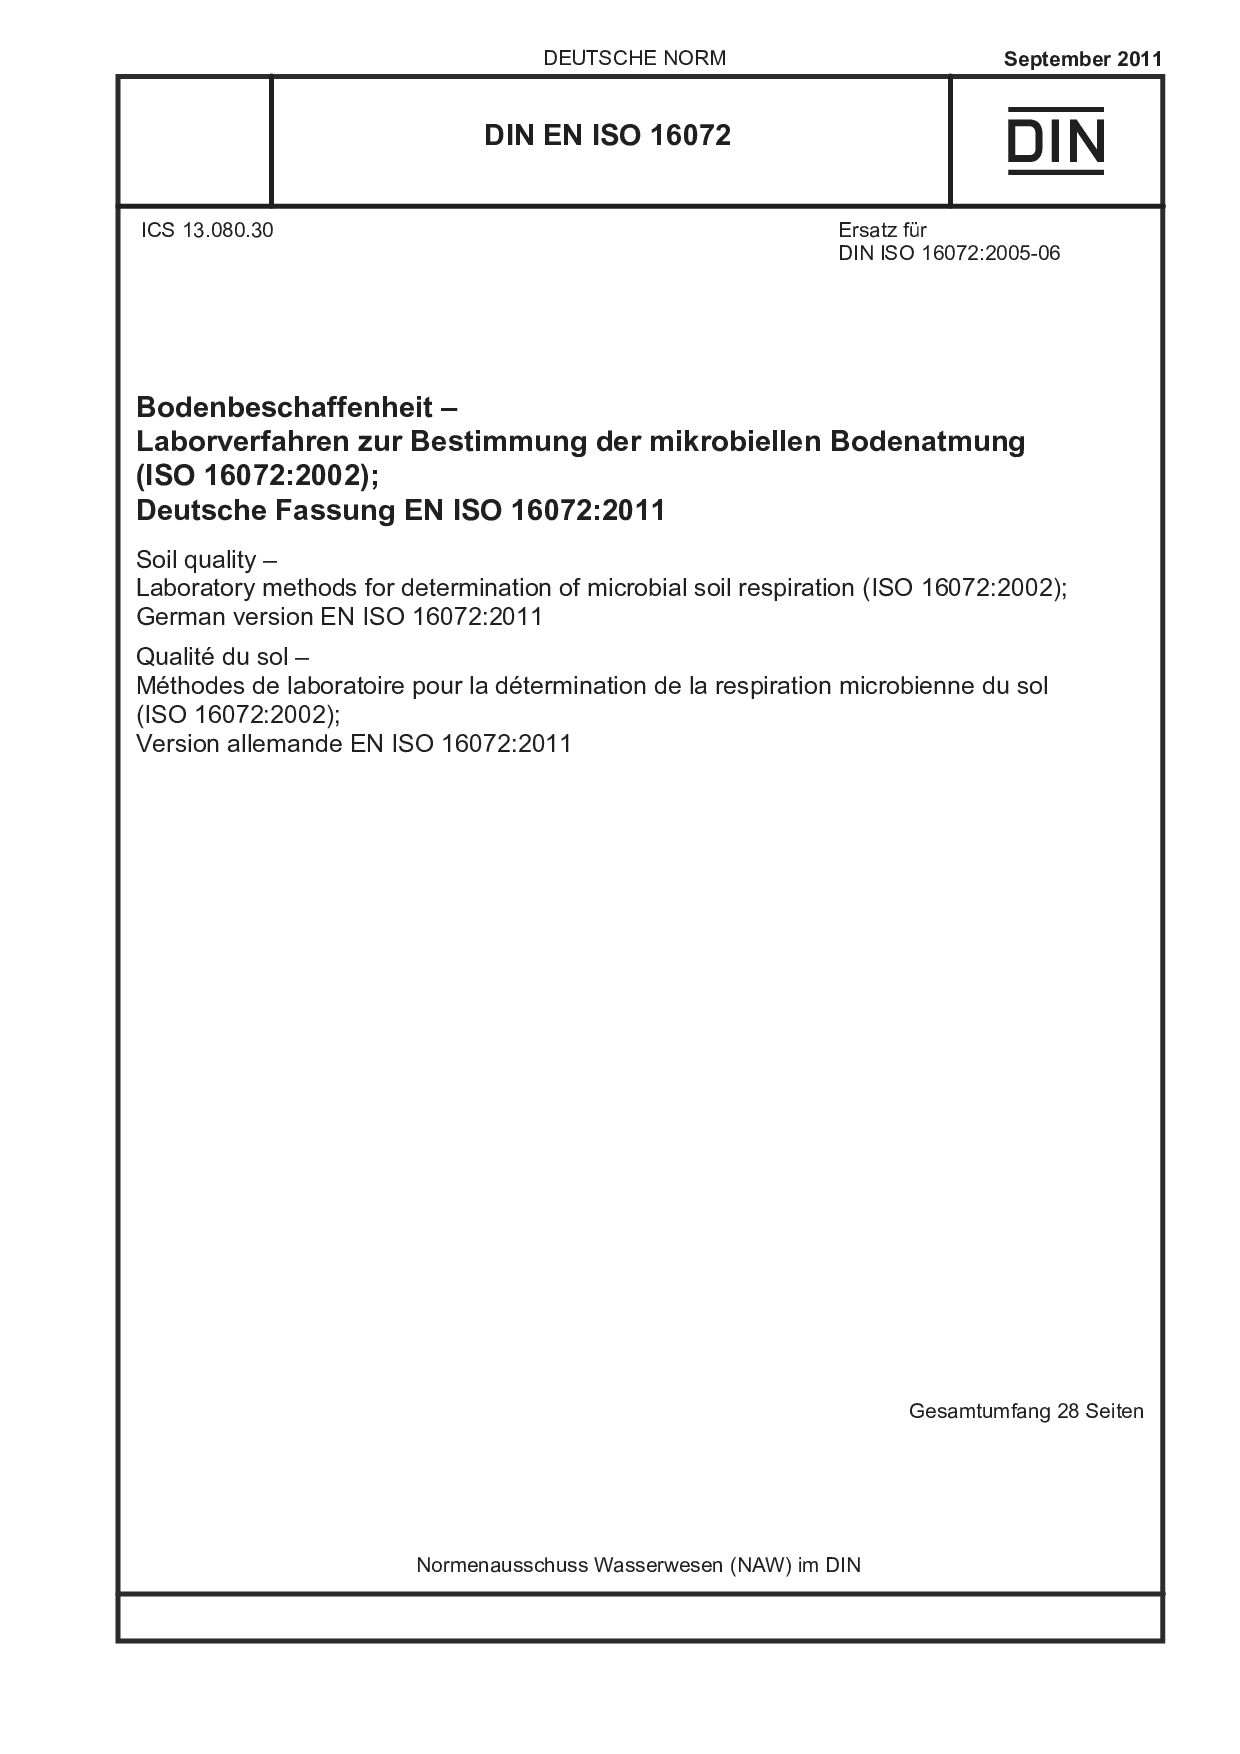 DIN EN ISO 16072:2011-09